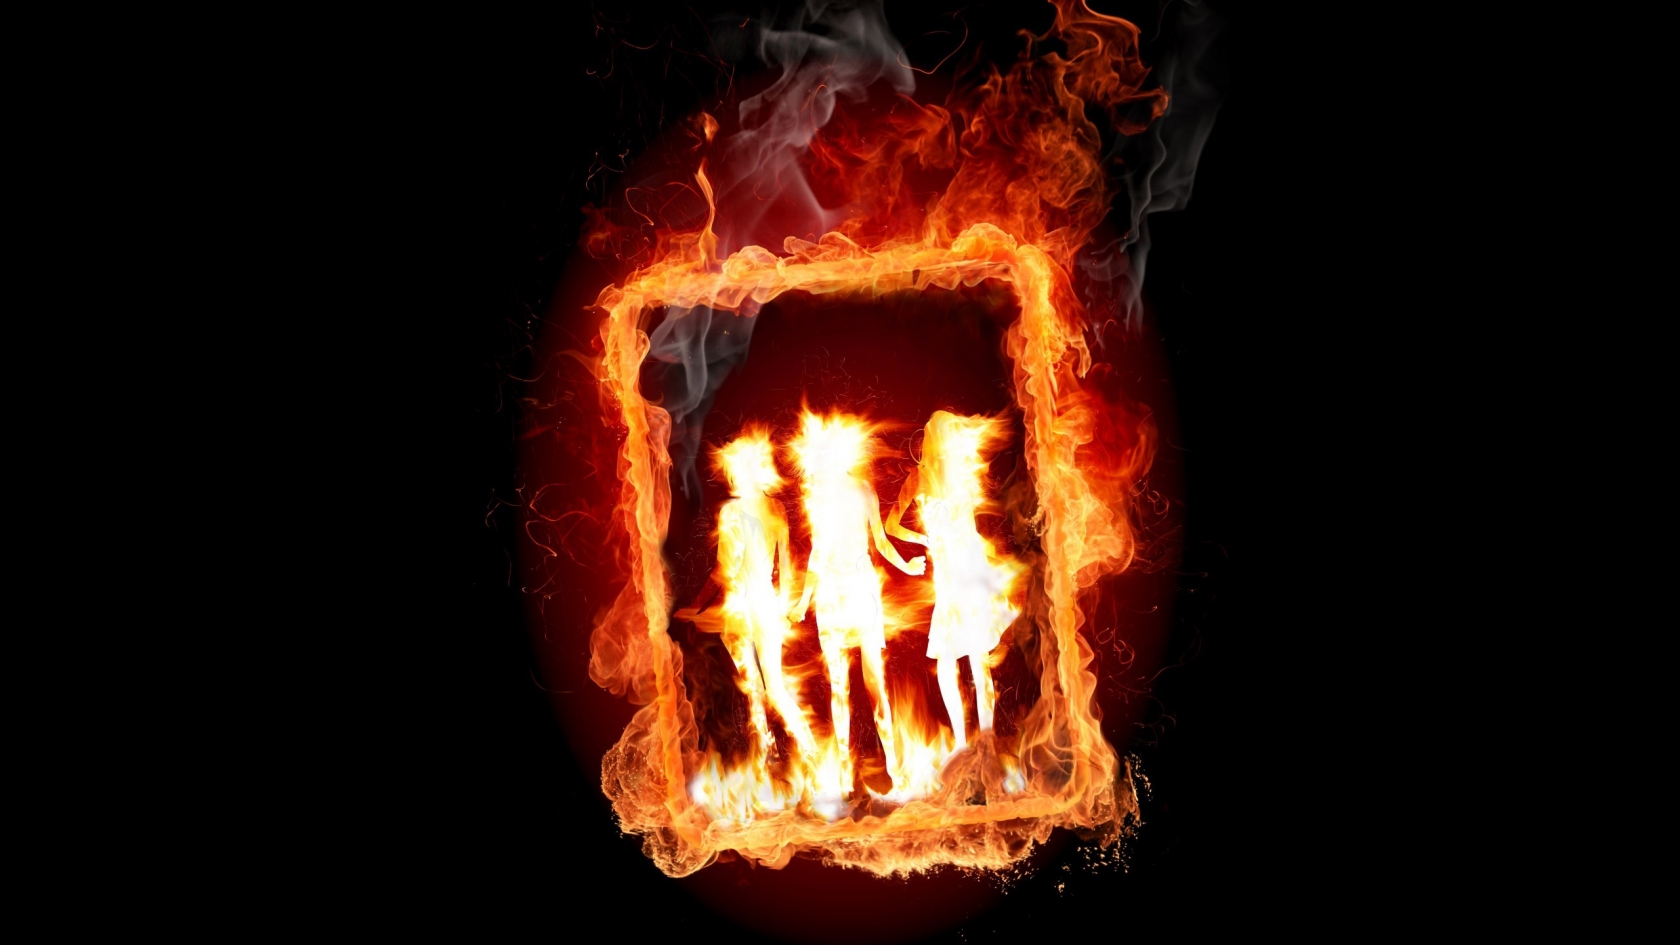 Girl Frame in Fire for 1680 x 945 HDTV resolution